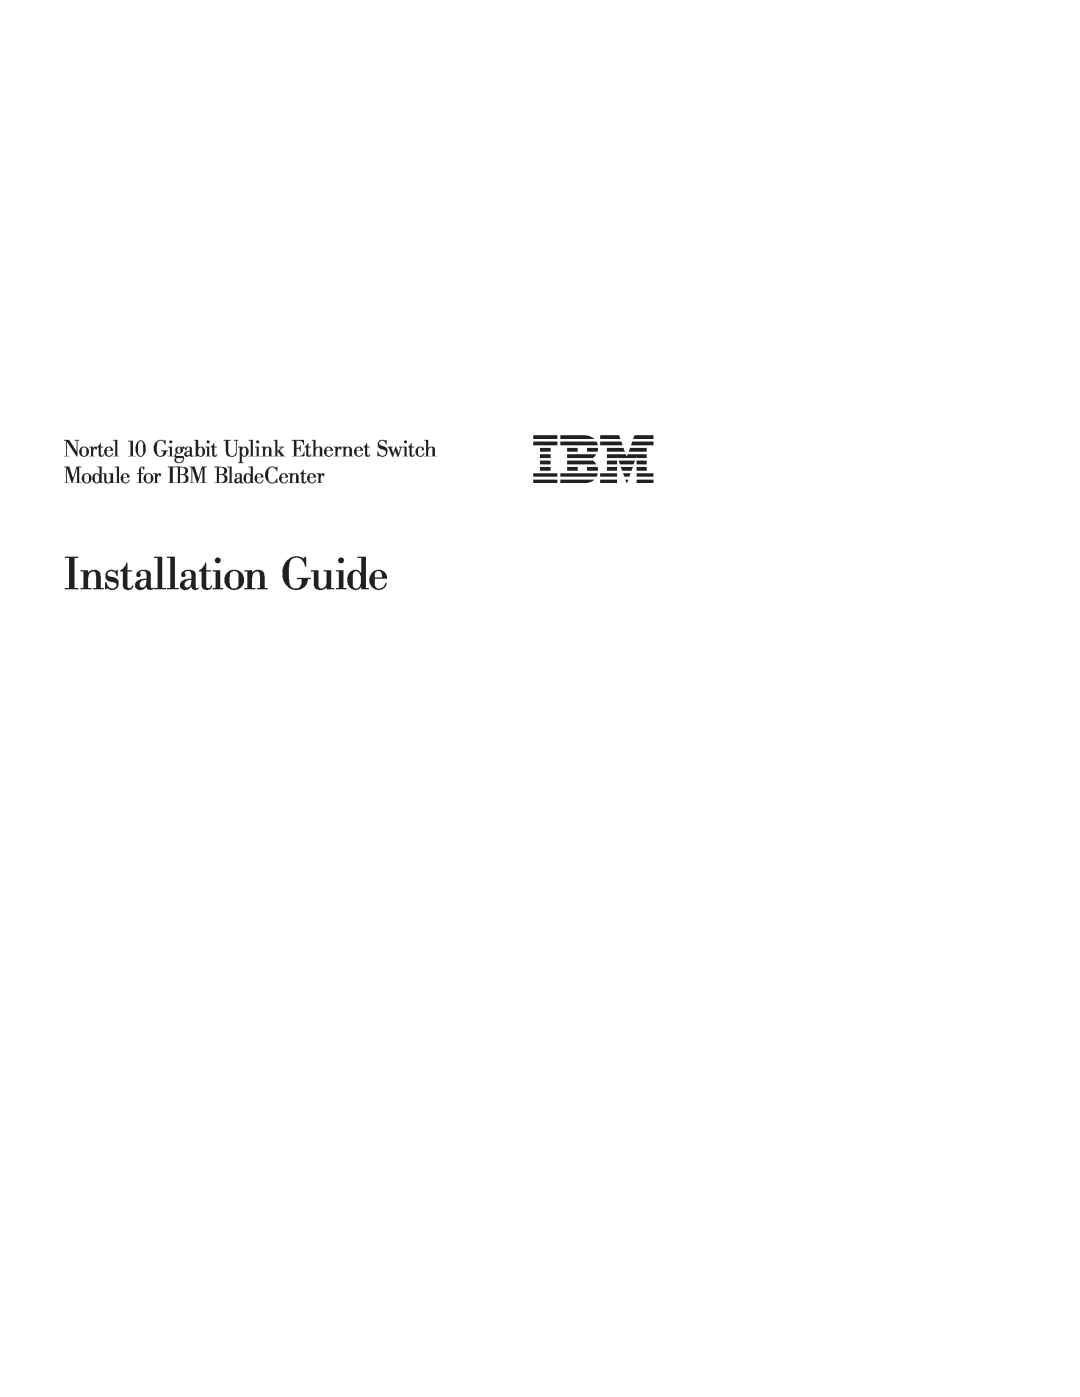 IBM manual Installation Guide, Nortel 10 Gigabit Uplink Ethernet Switch, Module for IBM BladeCenter 